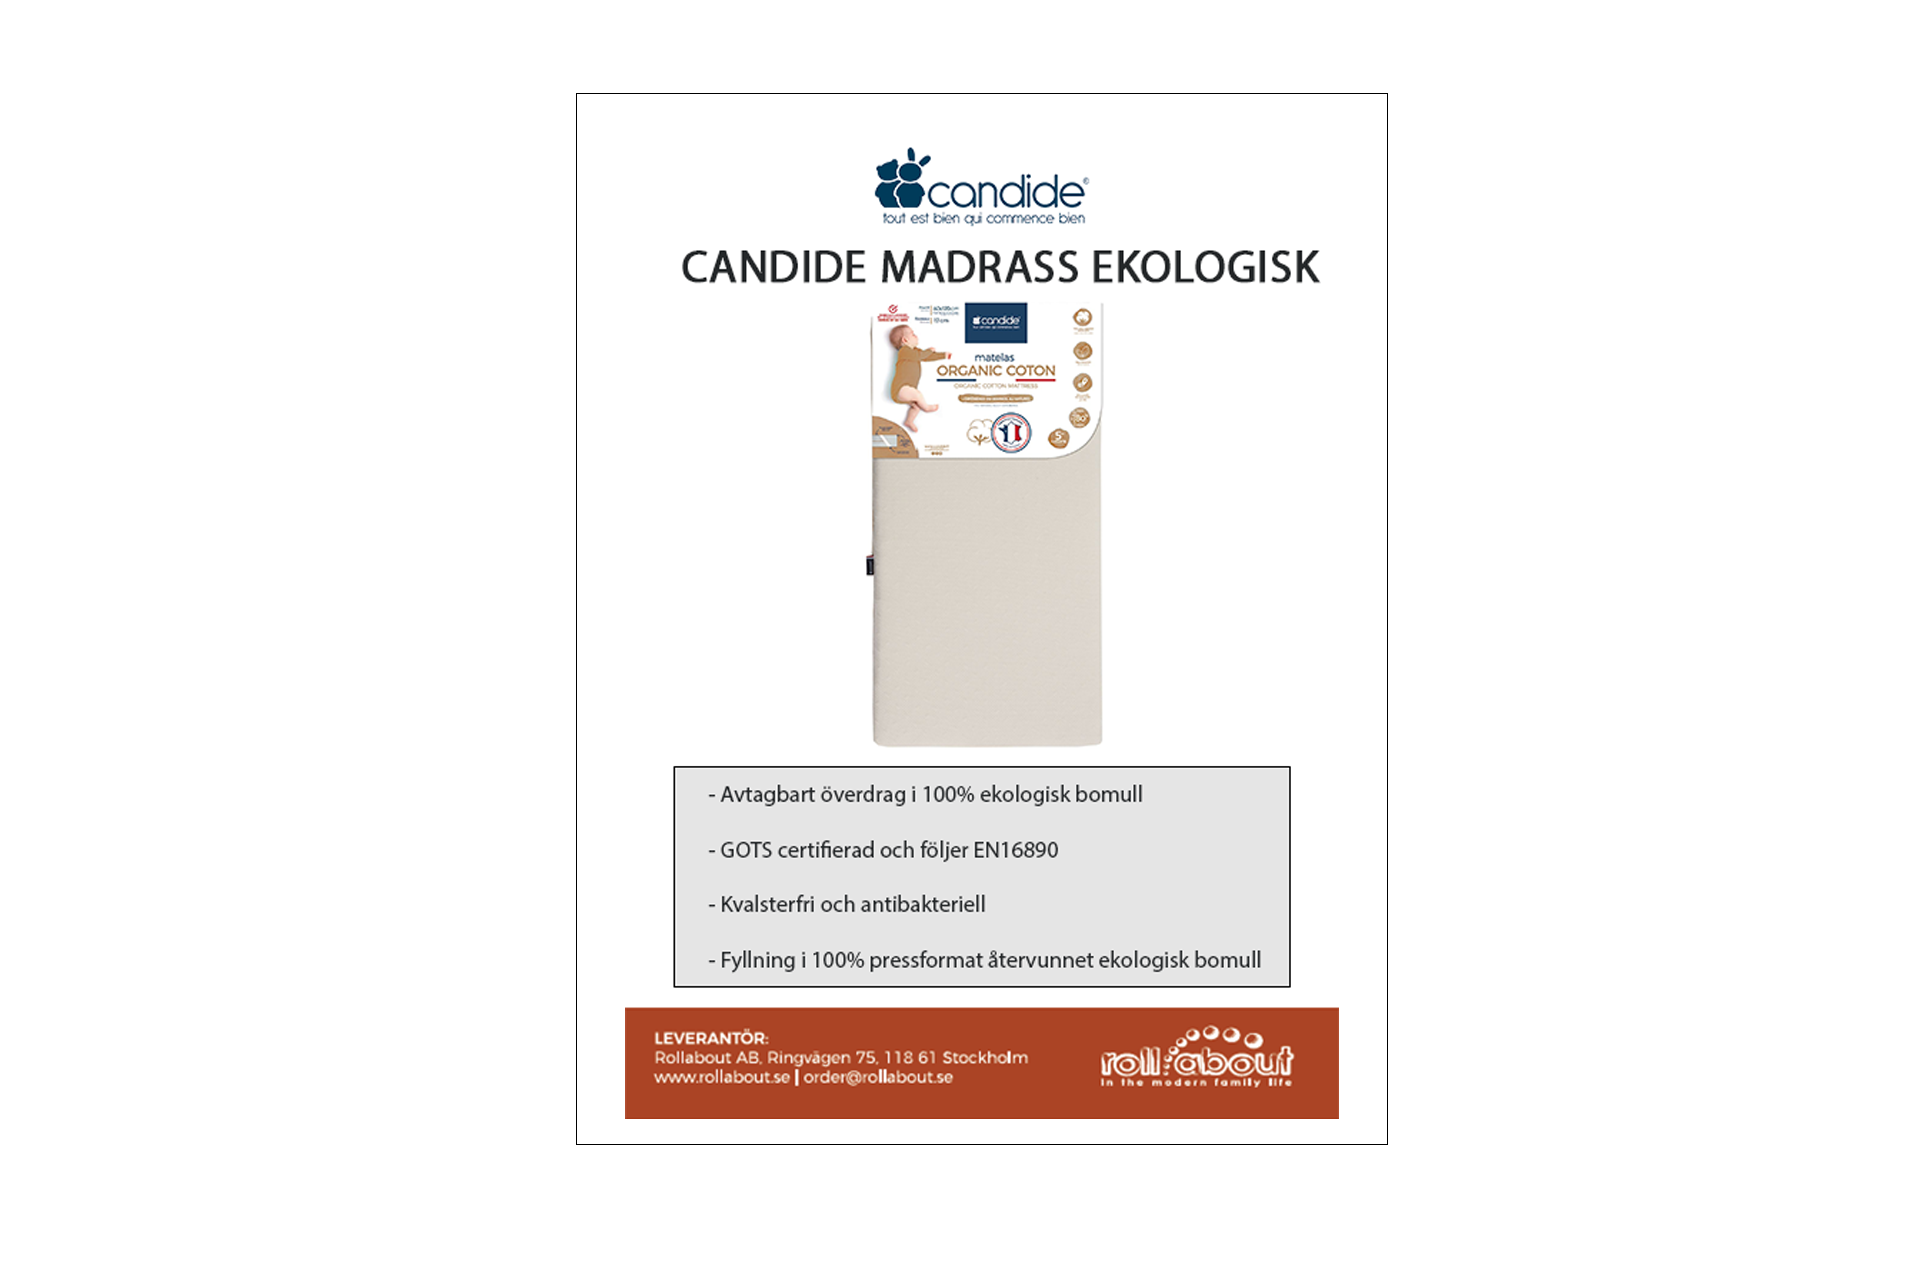 candide madrass Ekologisk infobladpos web